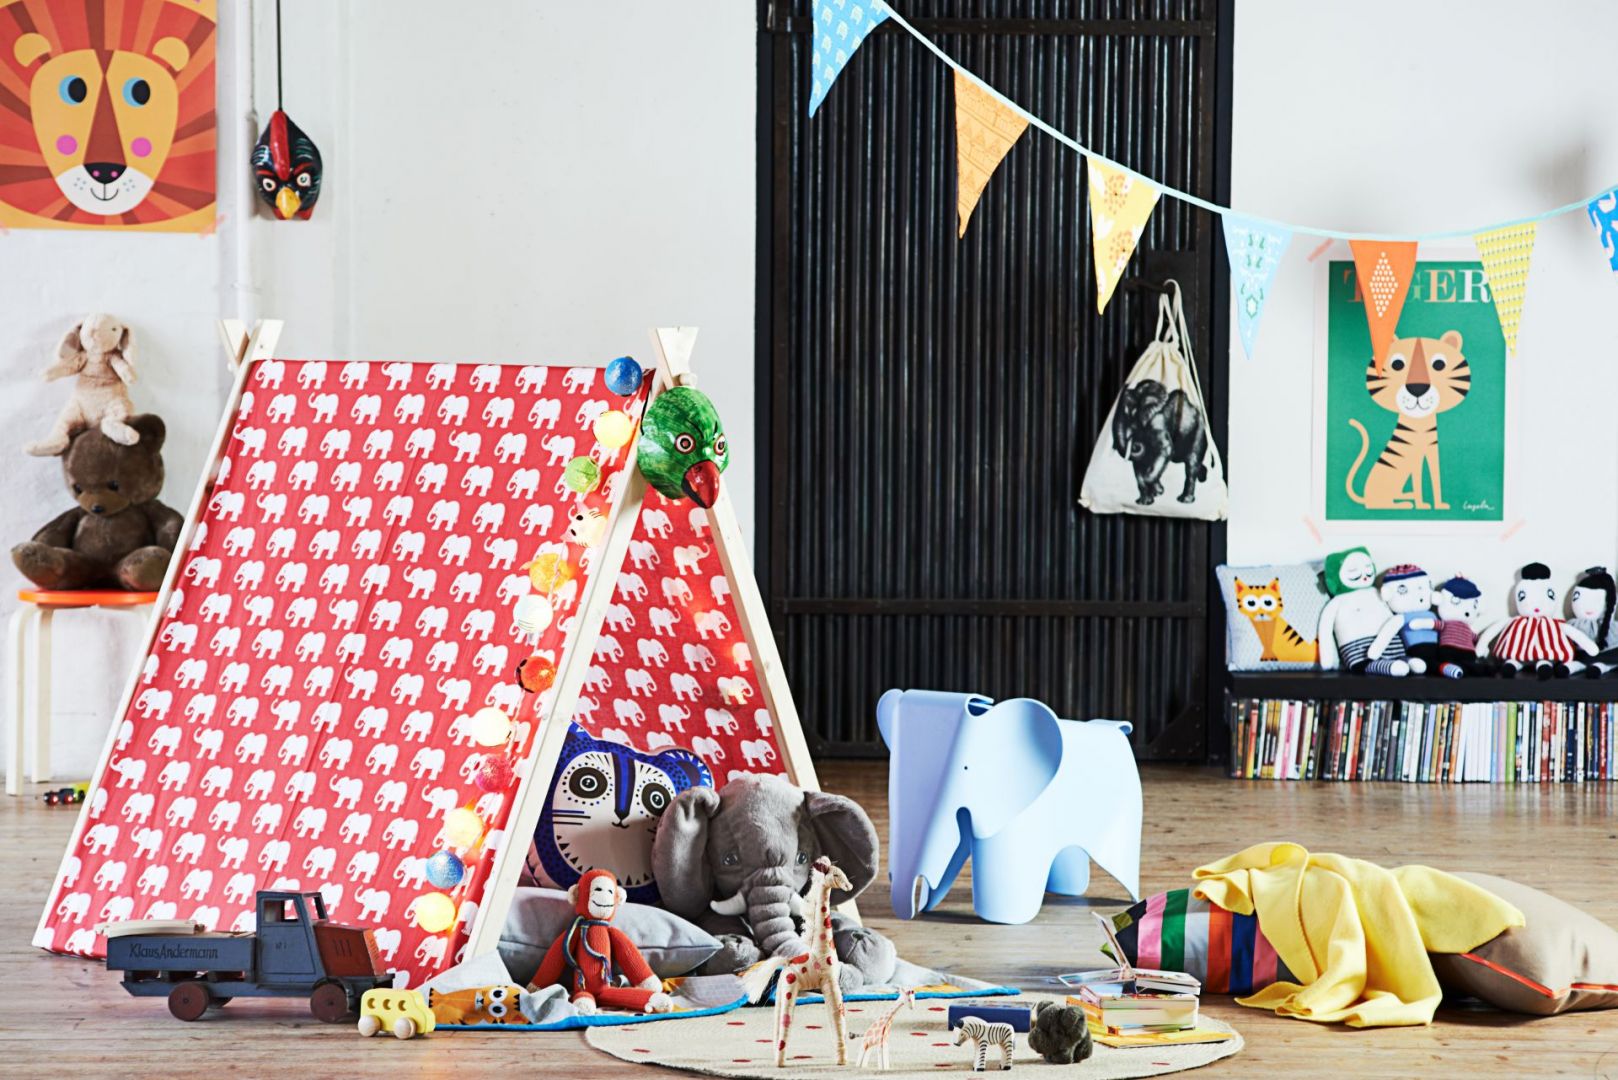 Namiot to wspaniała dekoracja do pokoju dziecka i miejsce do dobrej zabawy. Fot. Bosch